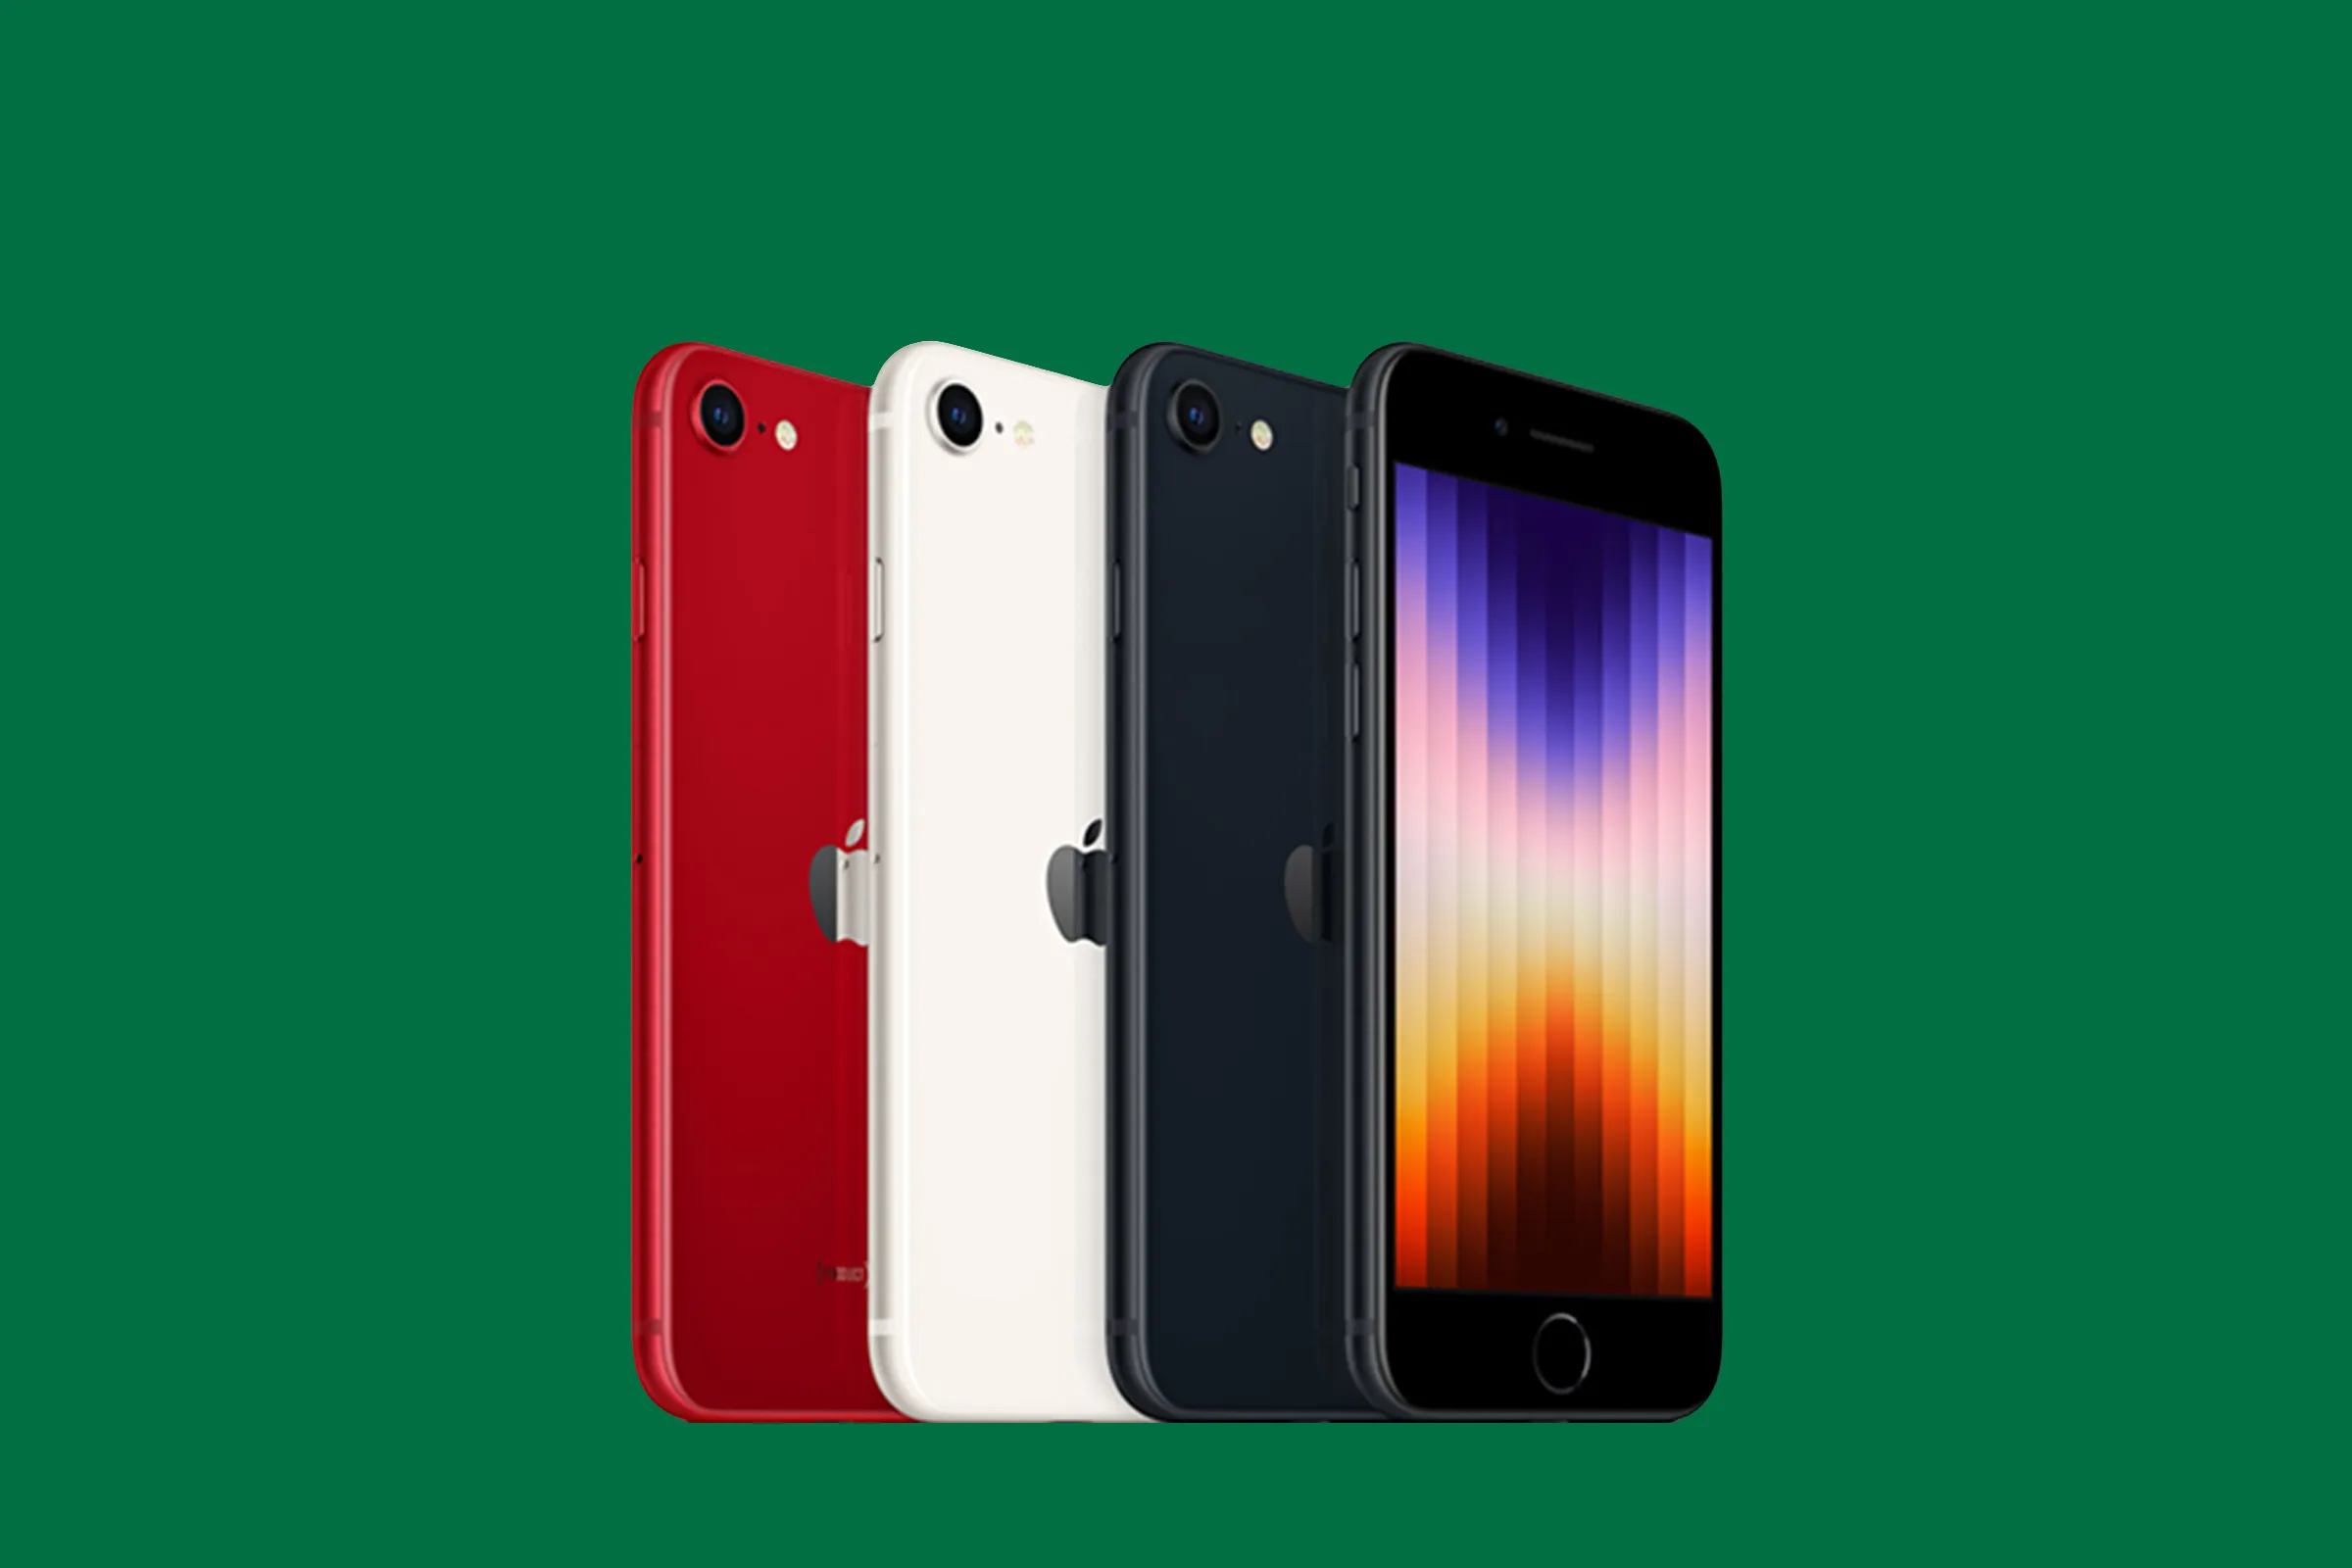 Apple iPhone SE 3 existuje v několika barevných variantách a využívá osvědčené tělo, kterou si tato produktová řada vypůjčila od iPhonu 8.